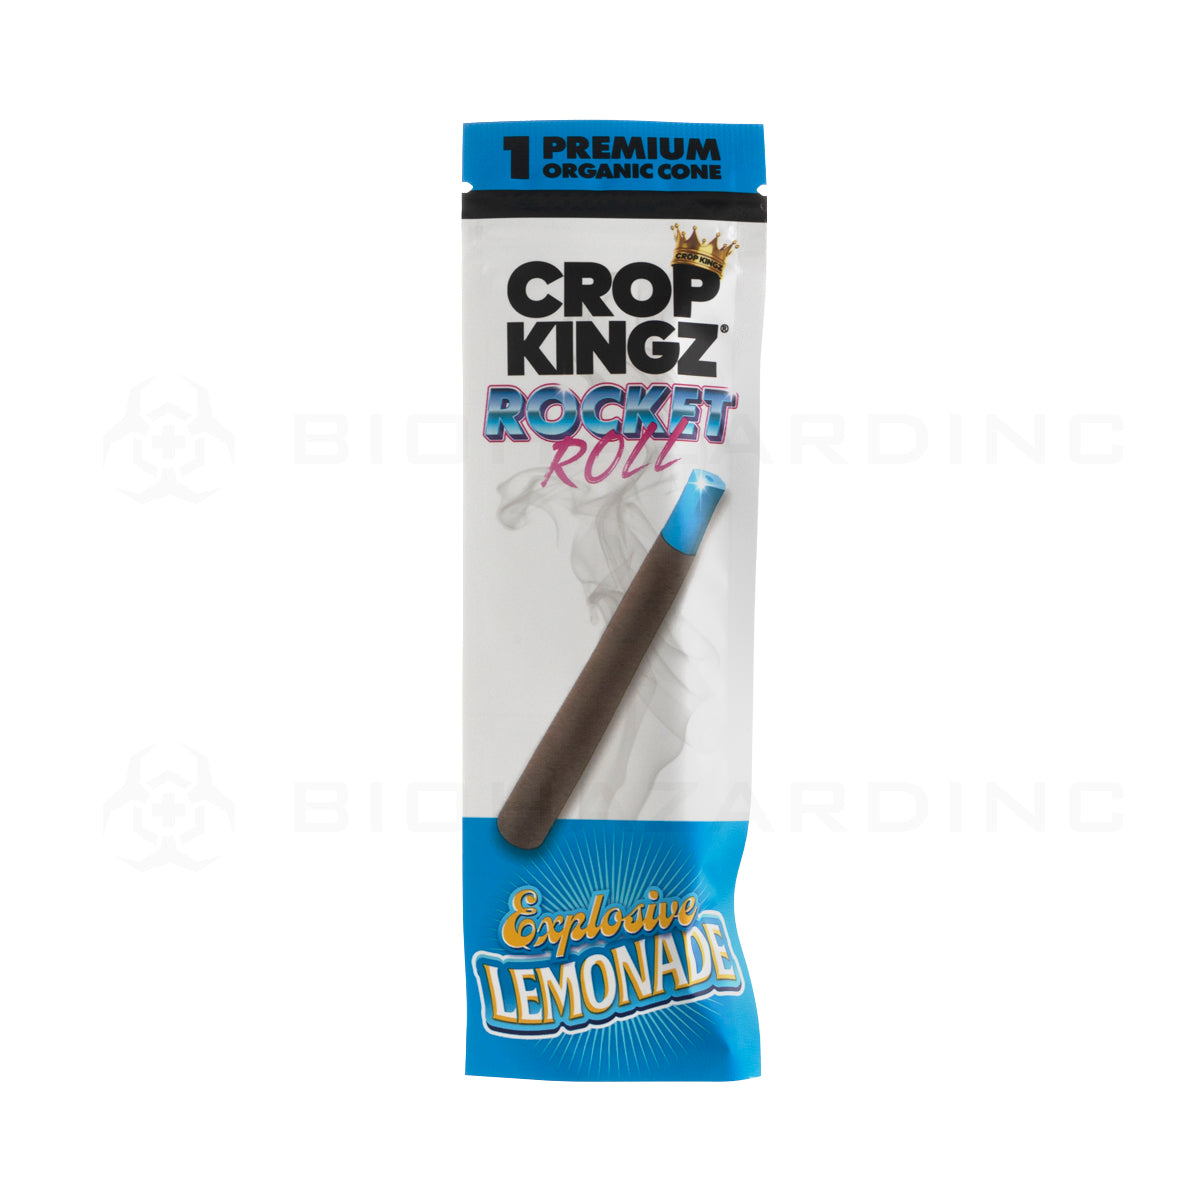 Crop Kingz | Rocket Roll Organic Hemp Wrap | Xplosive Lemonade - 15 Count